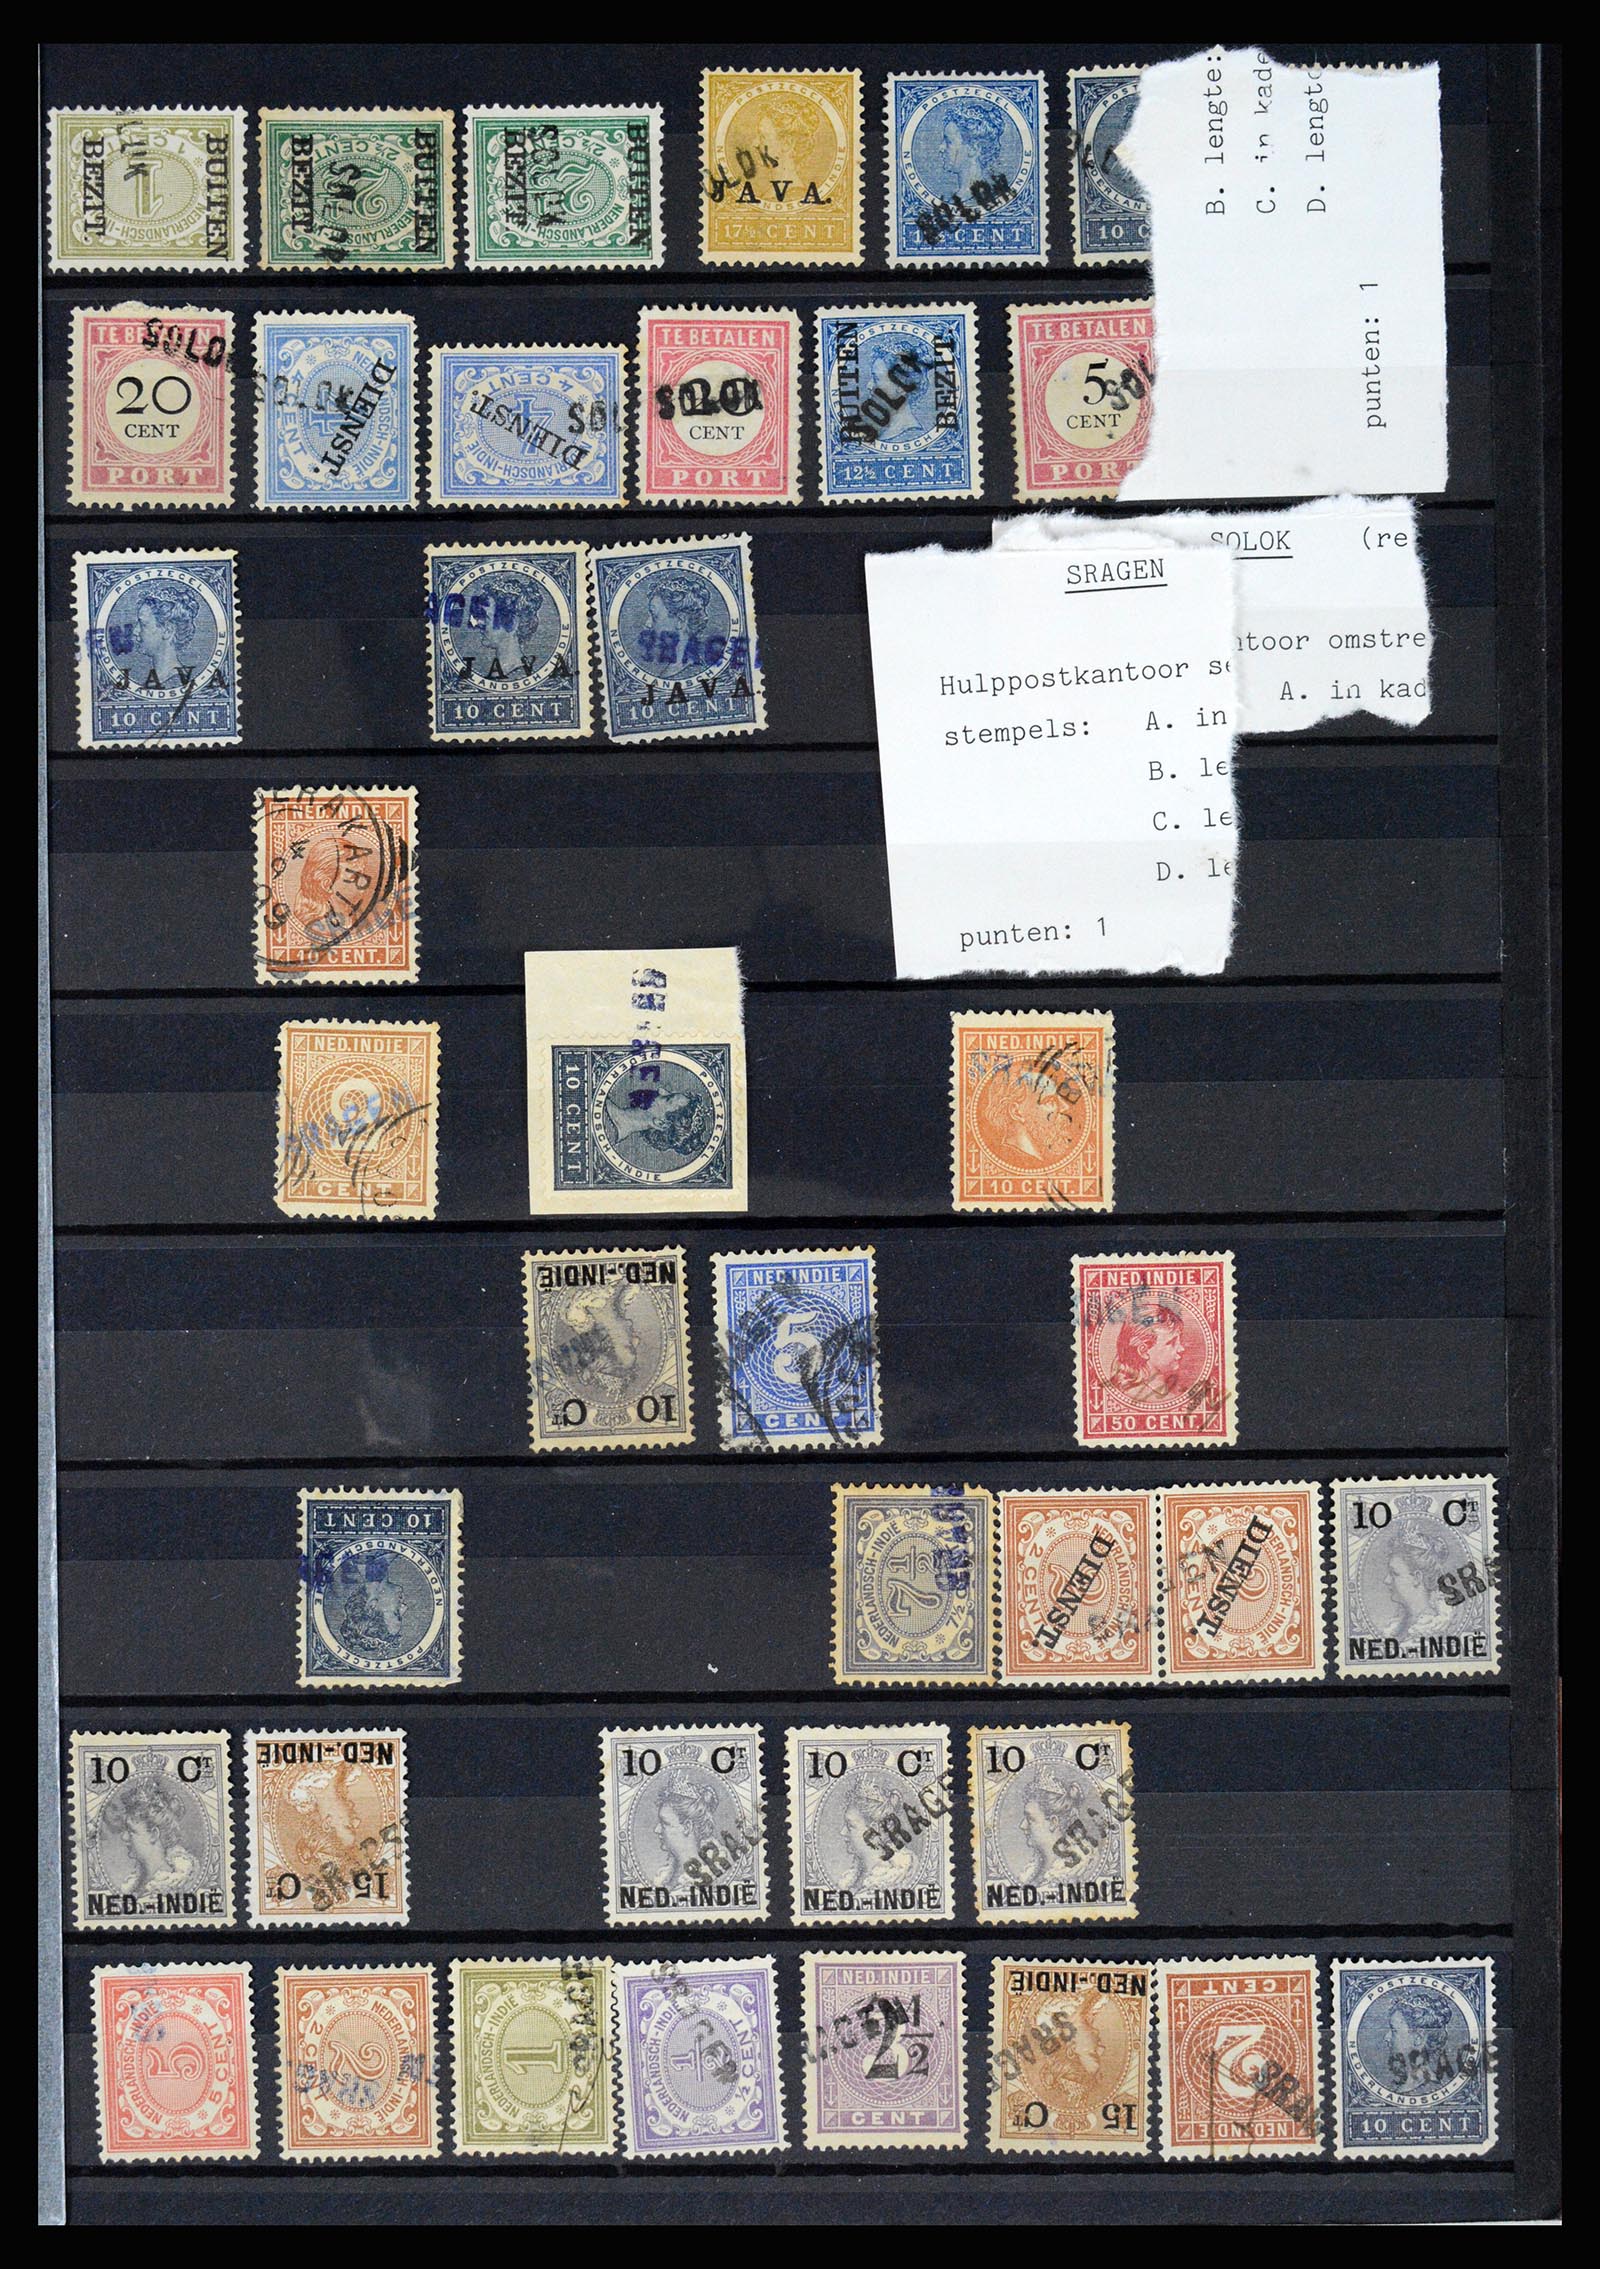 36512 067 - Stamp collection 36512 Nederlands Indië stempels 1872-1930.